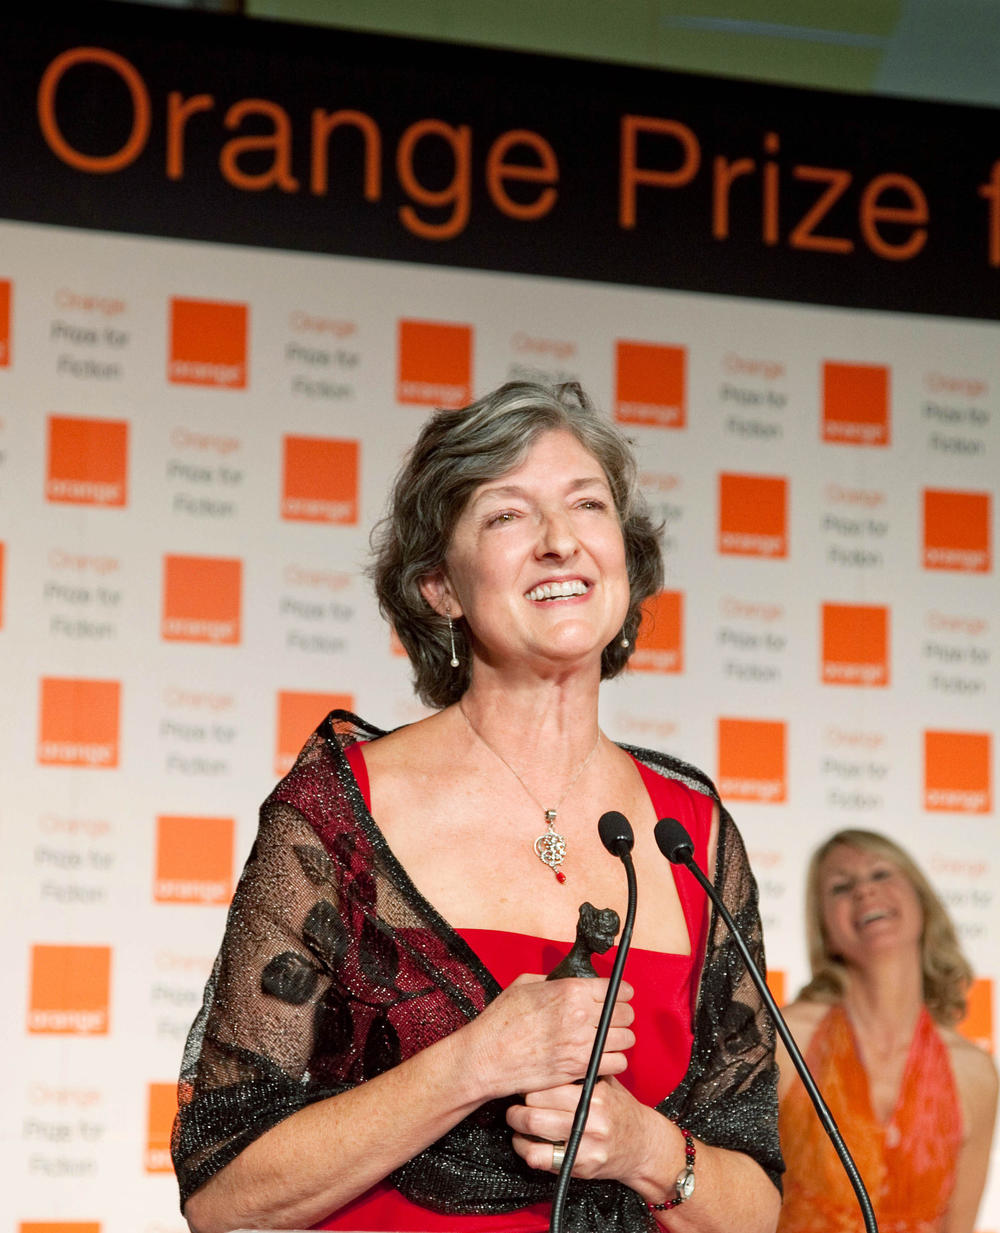 Barbara Kingsolver wins the Orange Prize